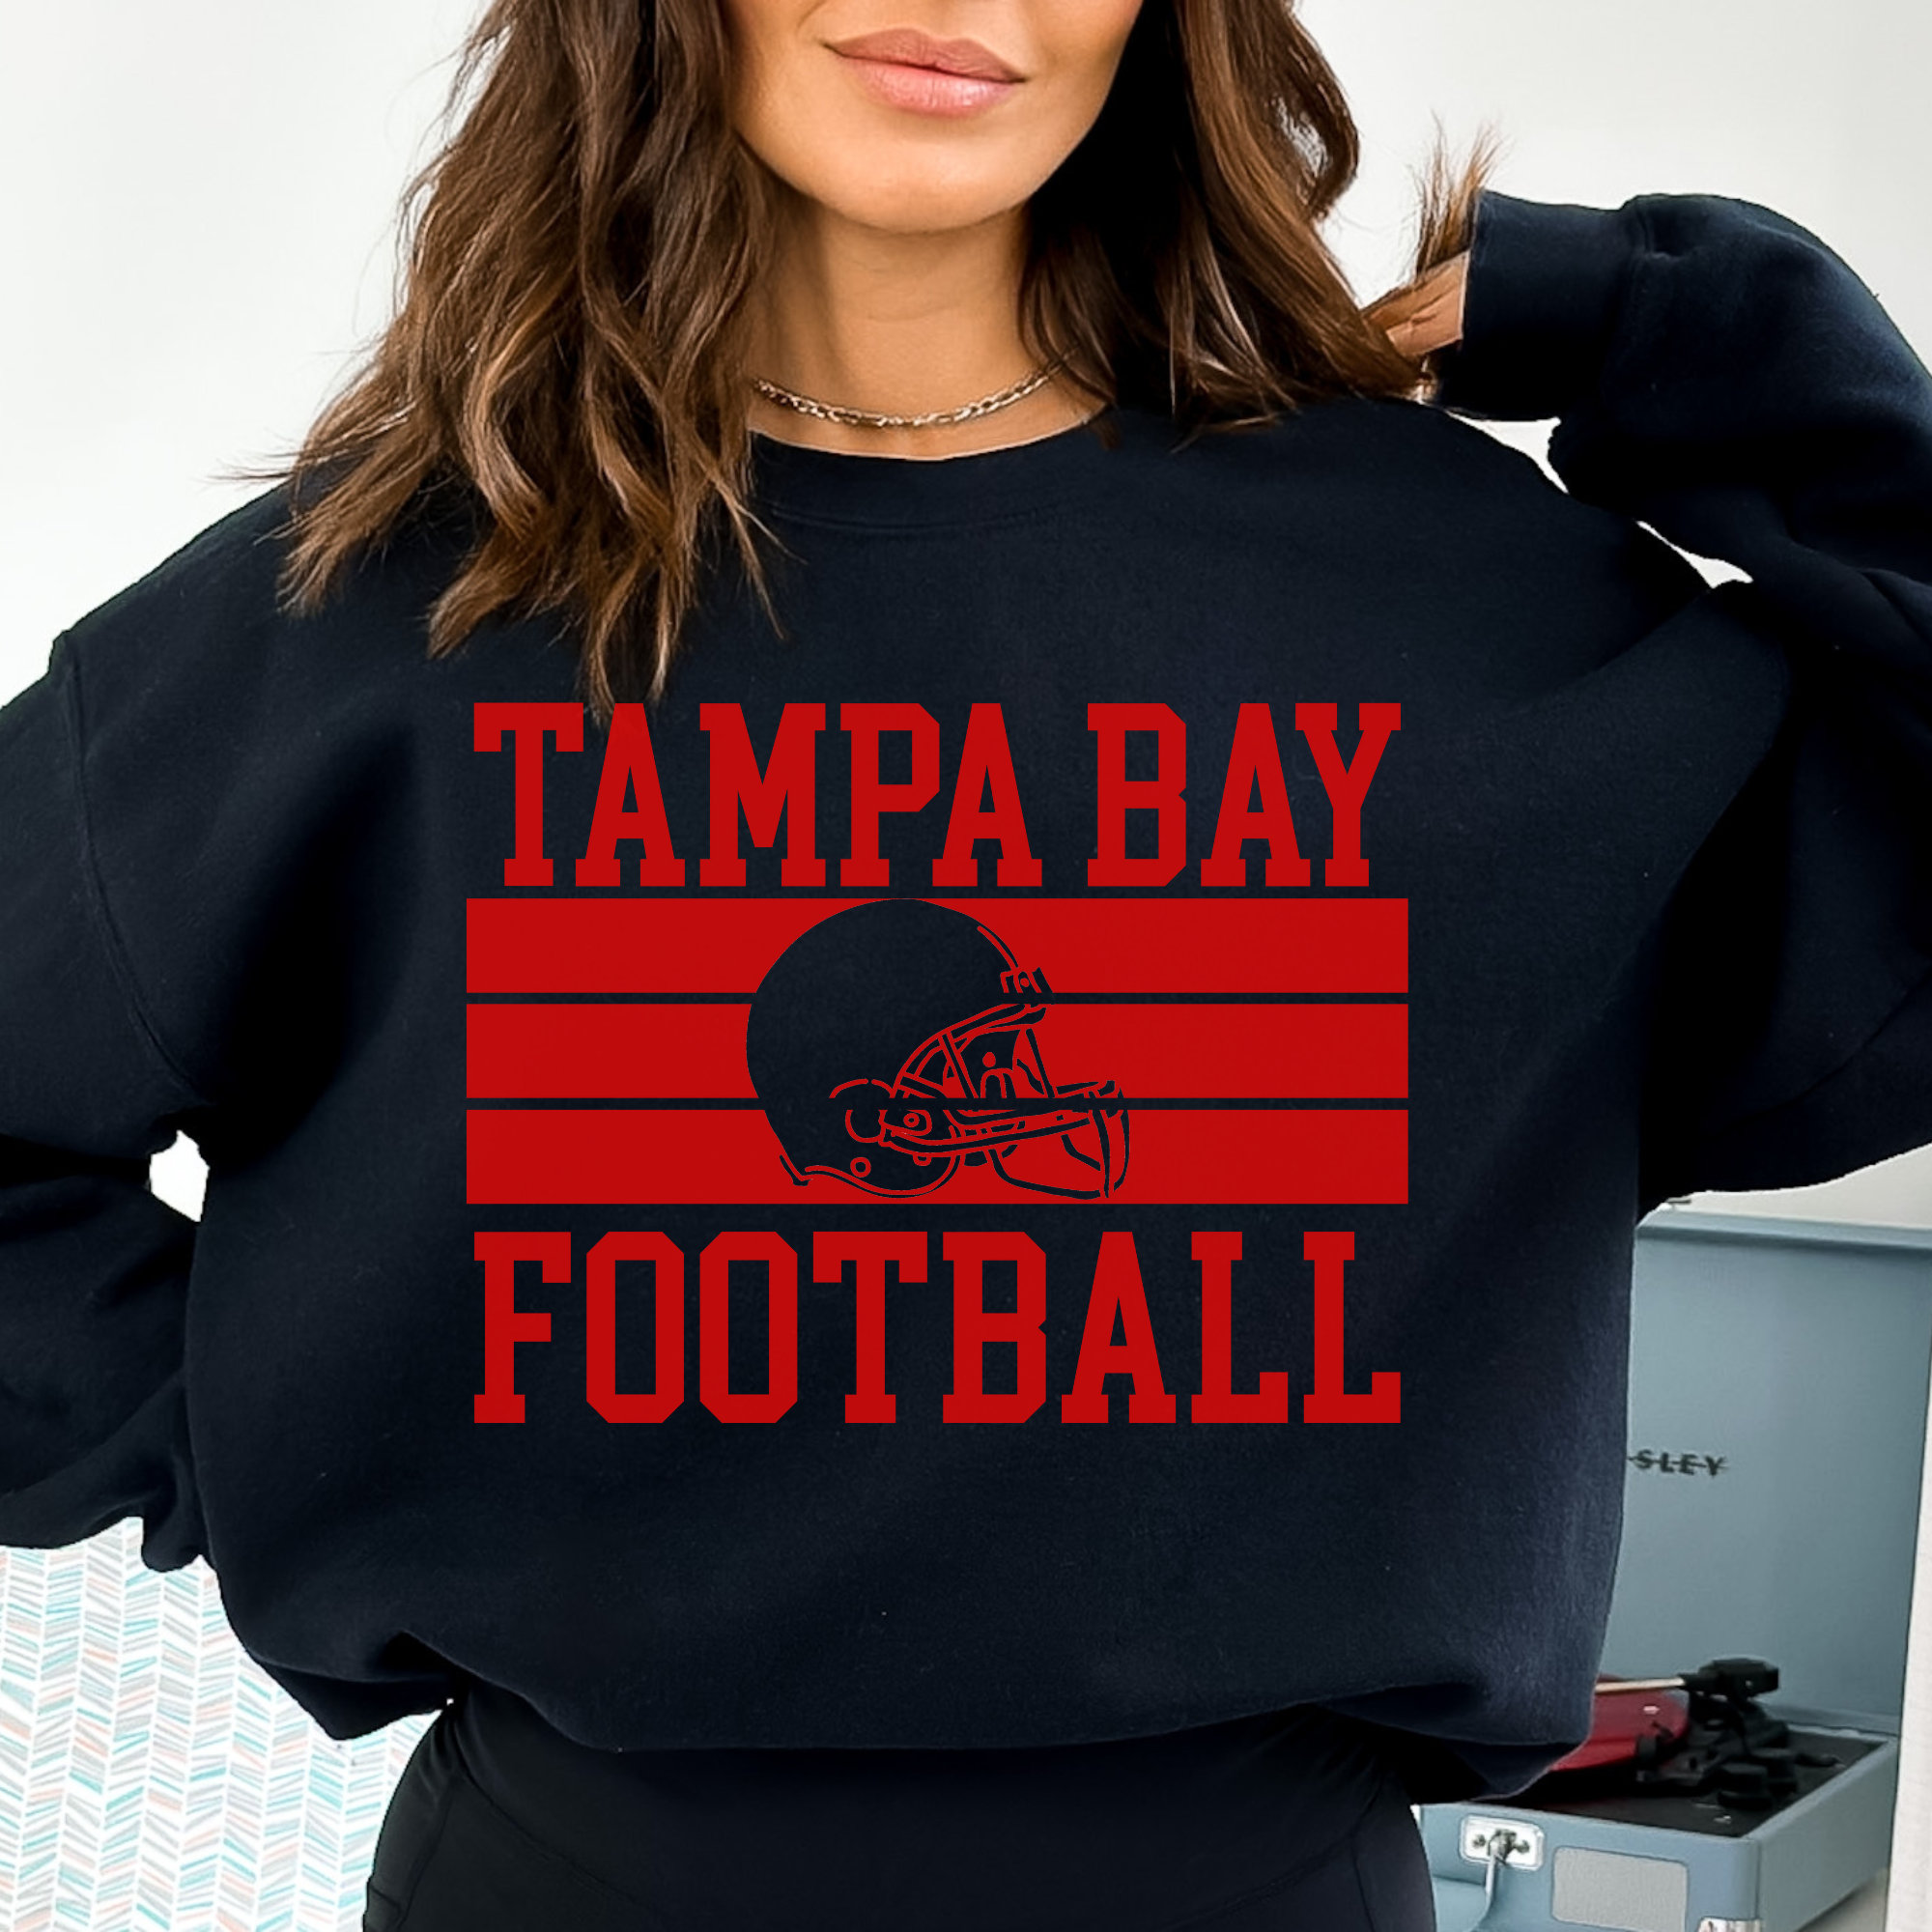 NFL team apparel boys' tampa bay buccaneers helmets shirt, hoodie, sweater,  long sleeve and tank top